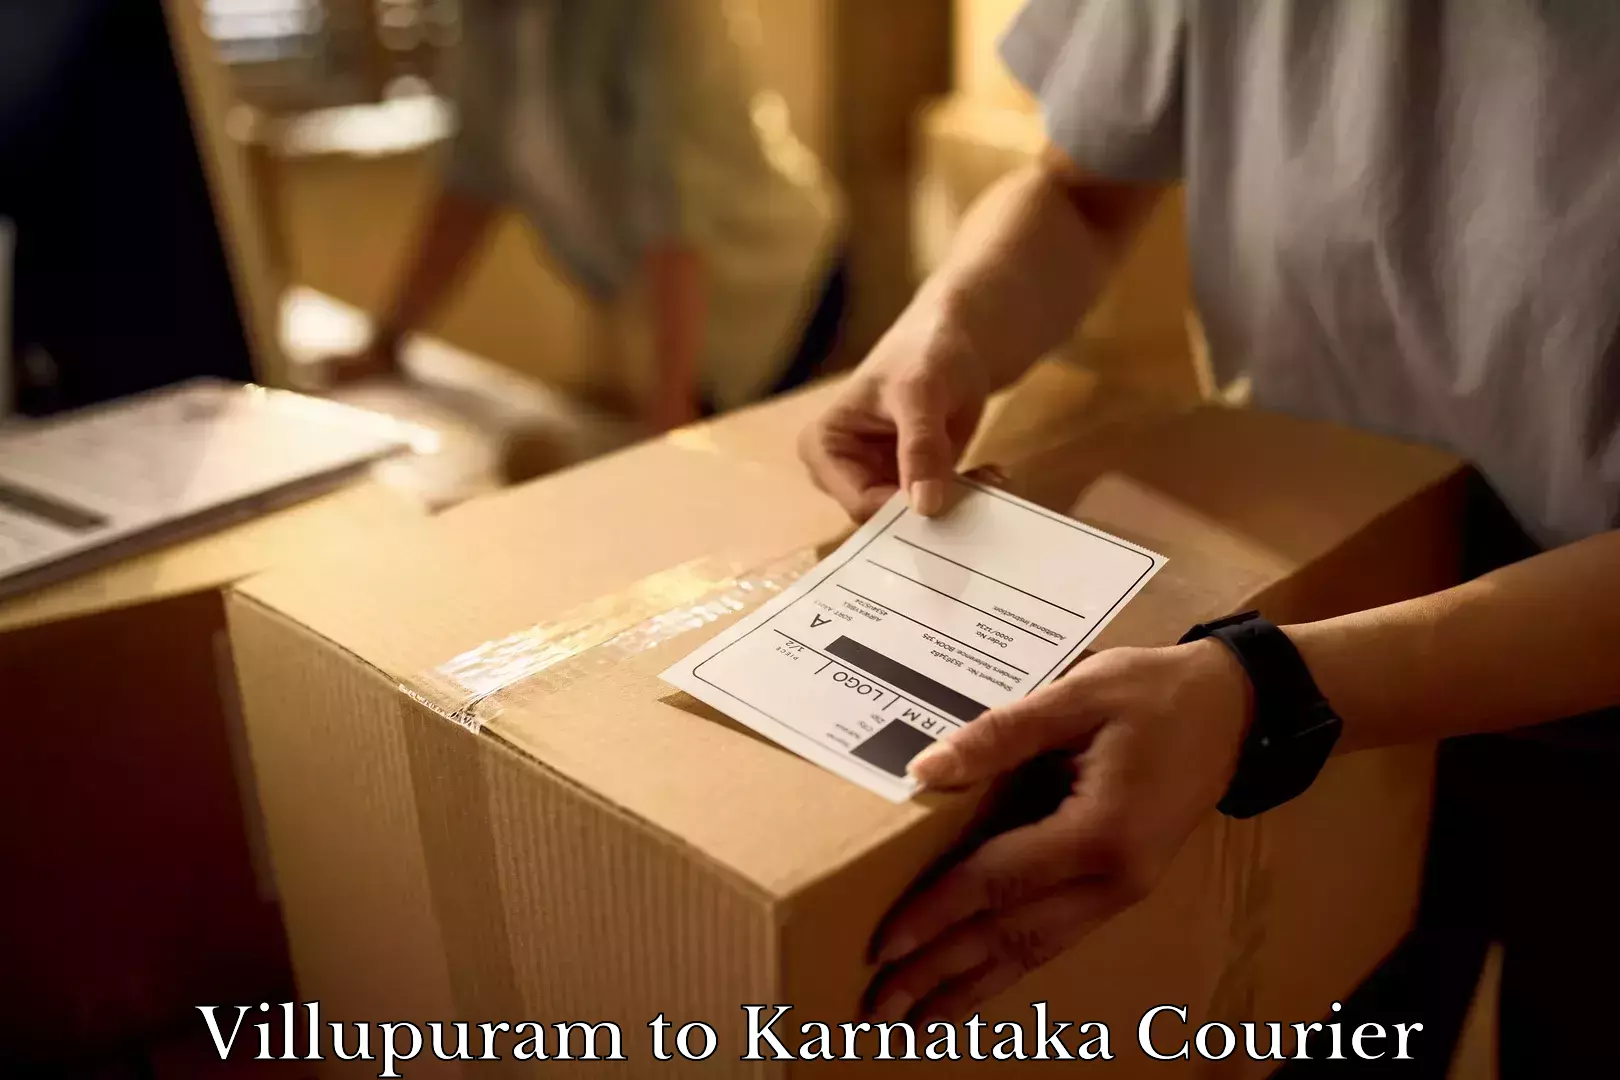 Trusted furniture movers Villupuram to Karnataka